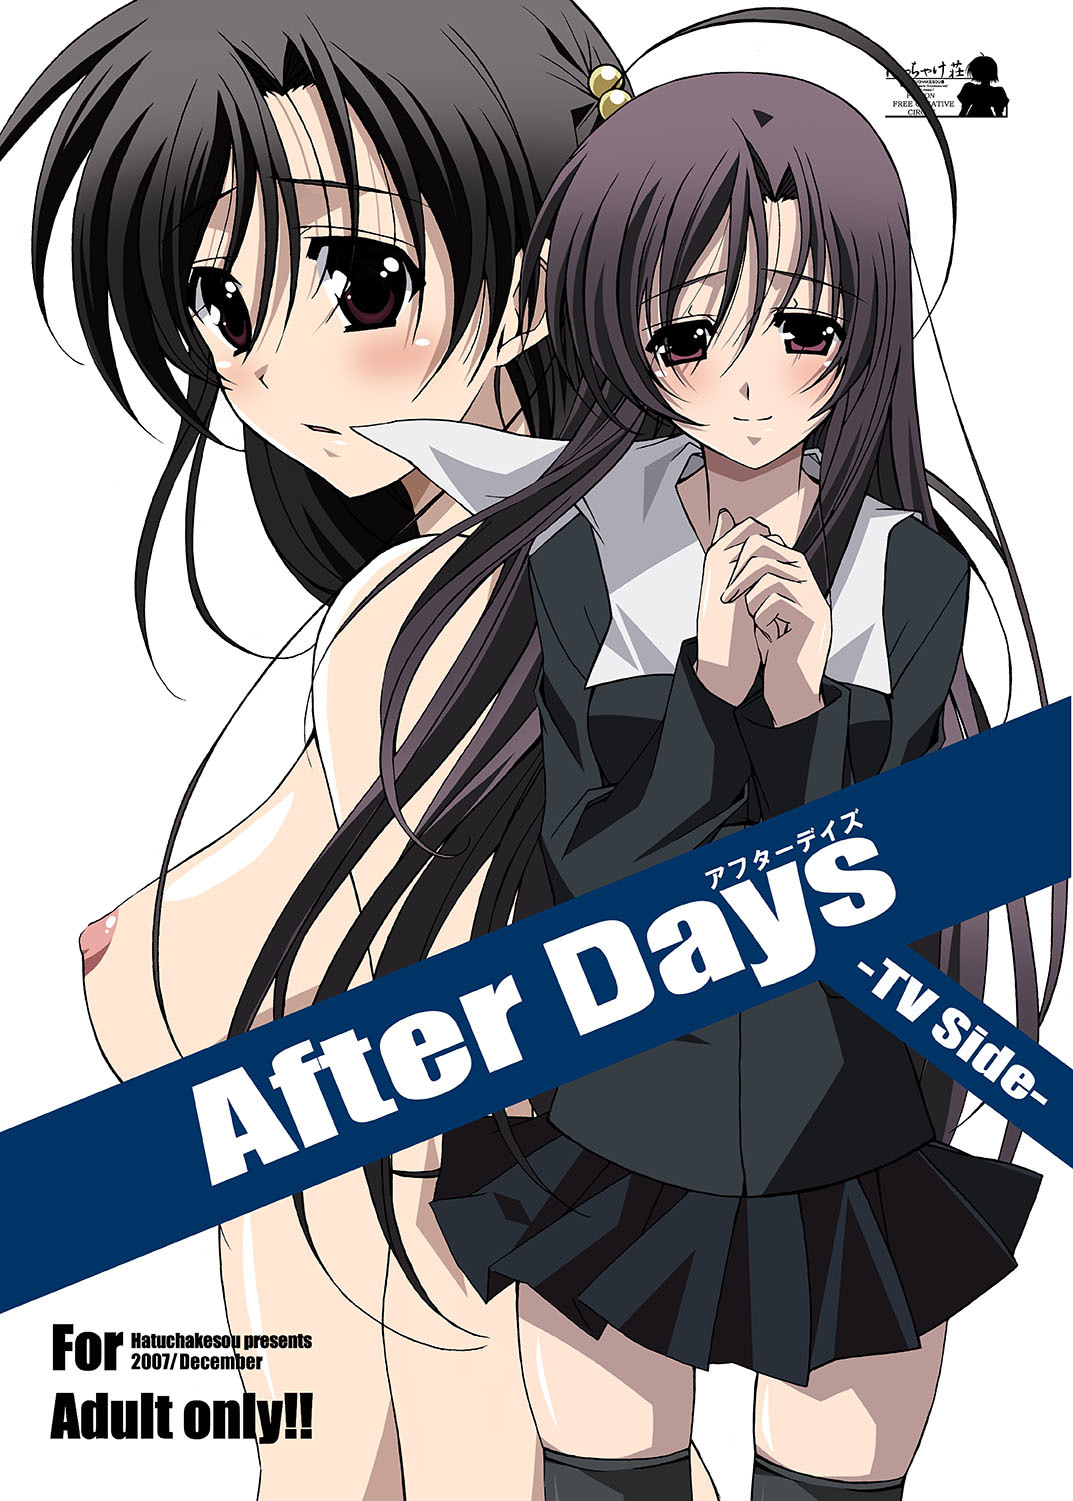 School Days Porn - School Days - Hentai Manga, Doujins, XXX & Anime Porn